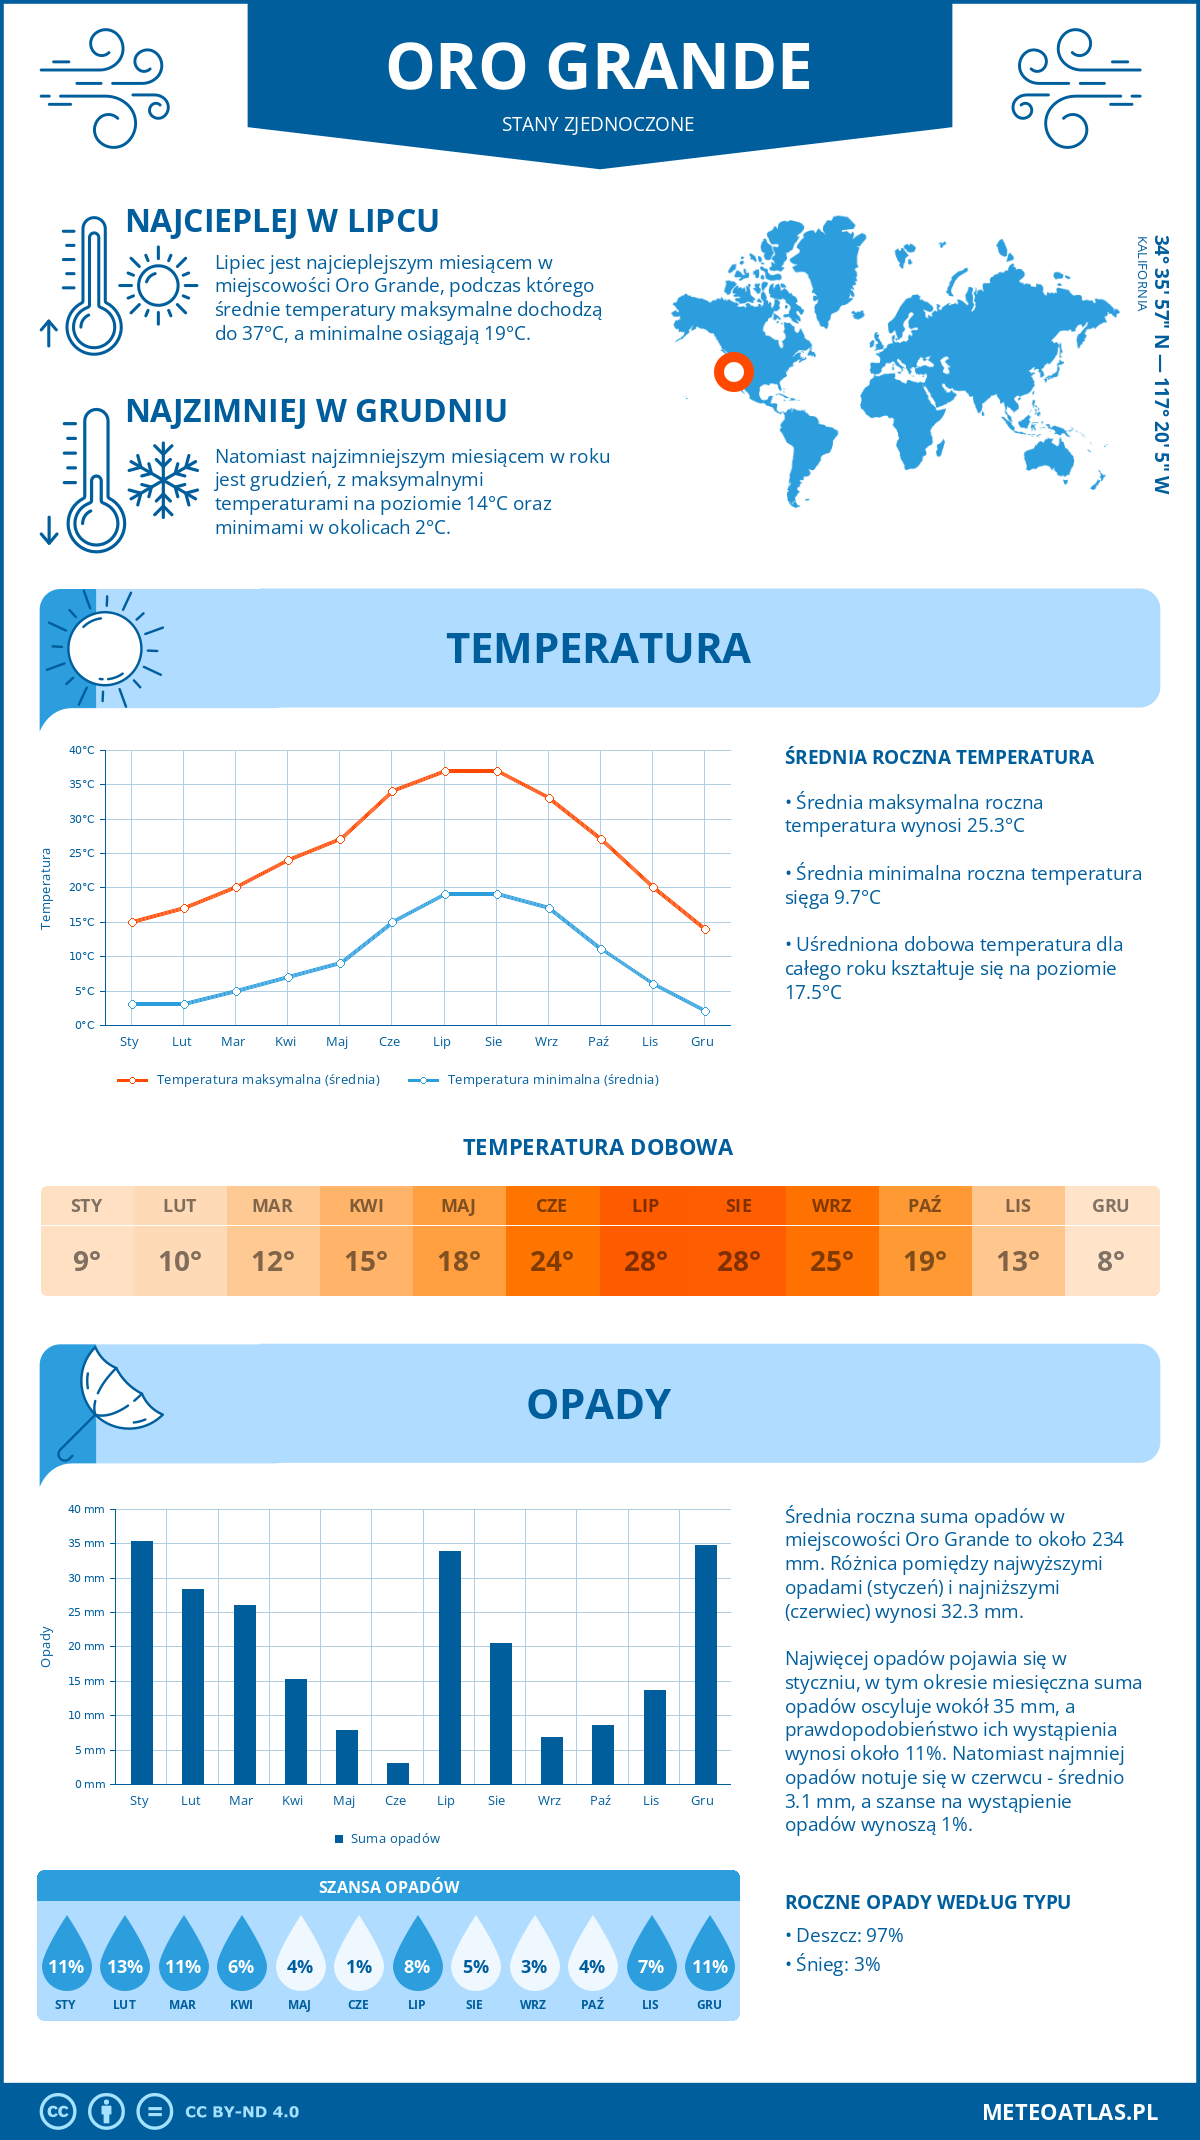 Pogoda Oro Grande (Stany Zjednoczone). Temperatura oraz opady.